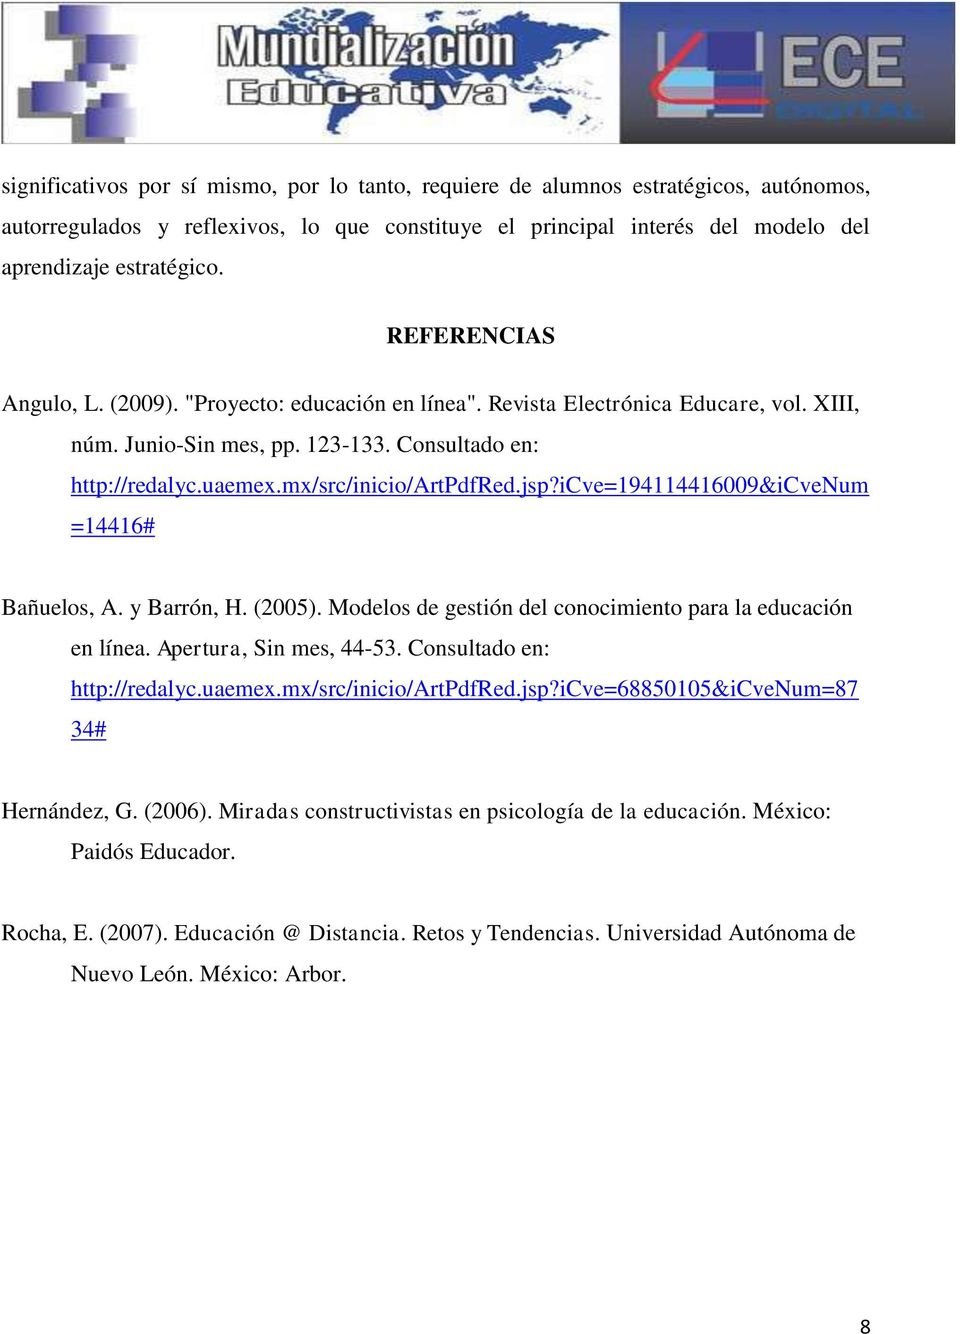 jsp?icve=194114416009&icvenum =14416# Bañuelos, A. y Barrón, H. (2005). Modelos de gestión del conocimiento para la educación en línea. Apertura, Sin mes, 44-53. Consultado en: http://redalyc.uaemex.